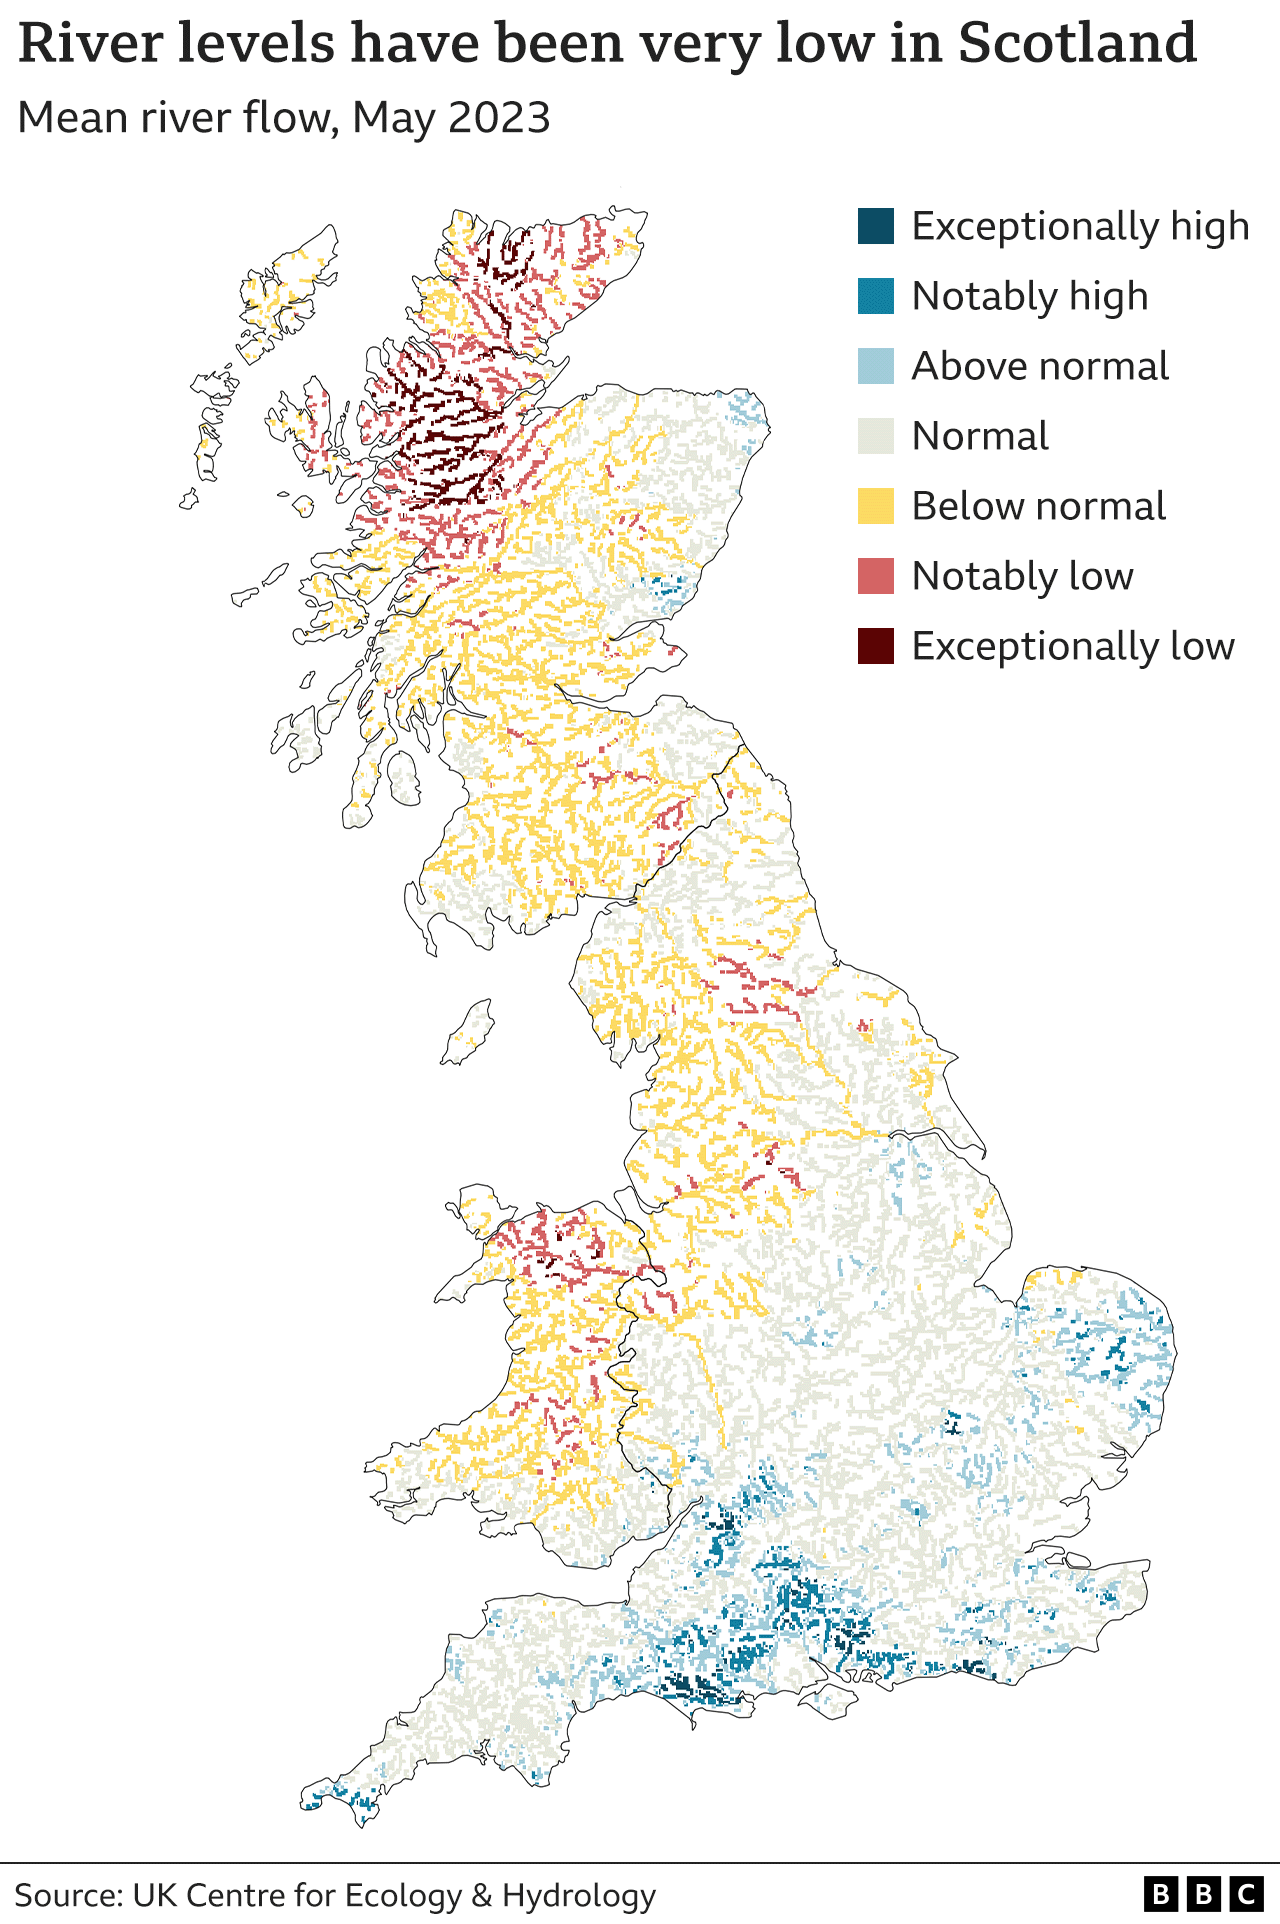 Карта, показывающая, что речной сток в Шотландии в мае был очень низким, по сравнению с более высоким речным стоком на юге Англии